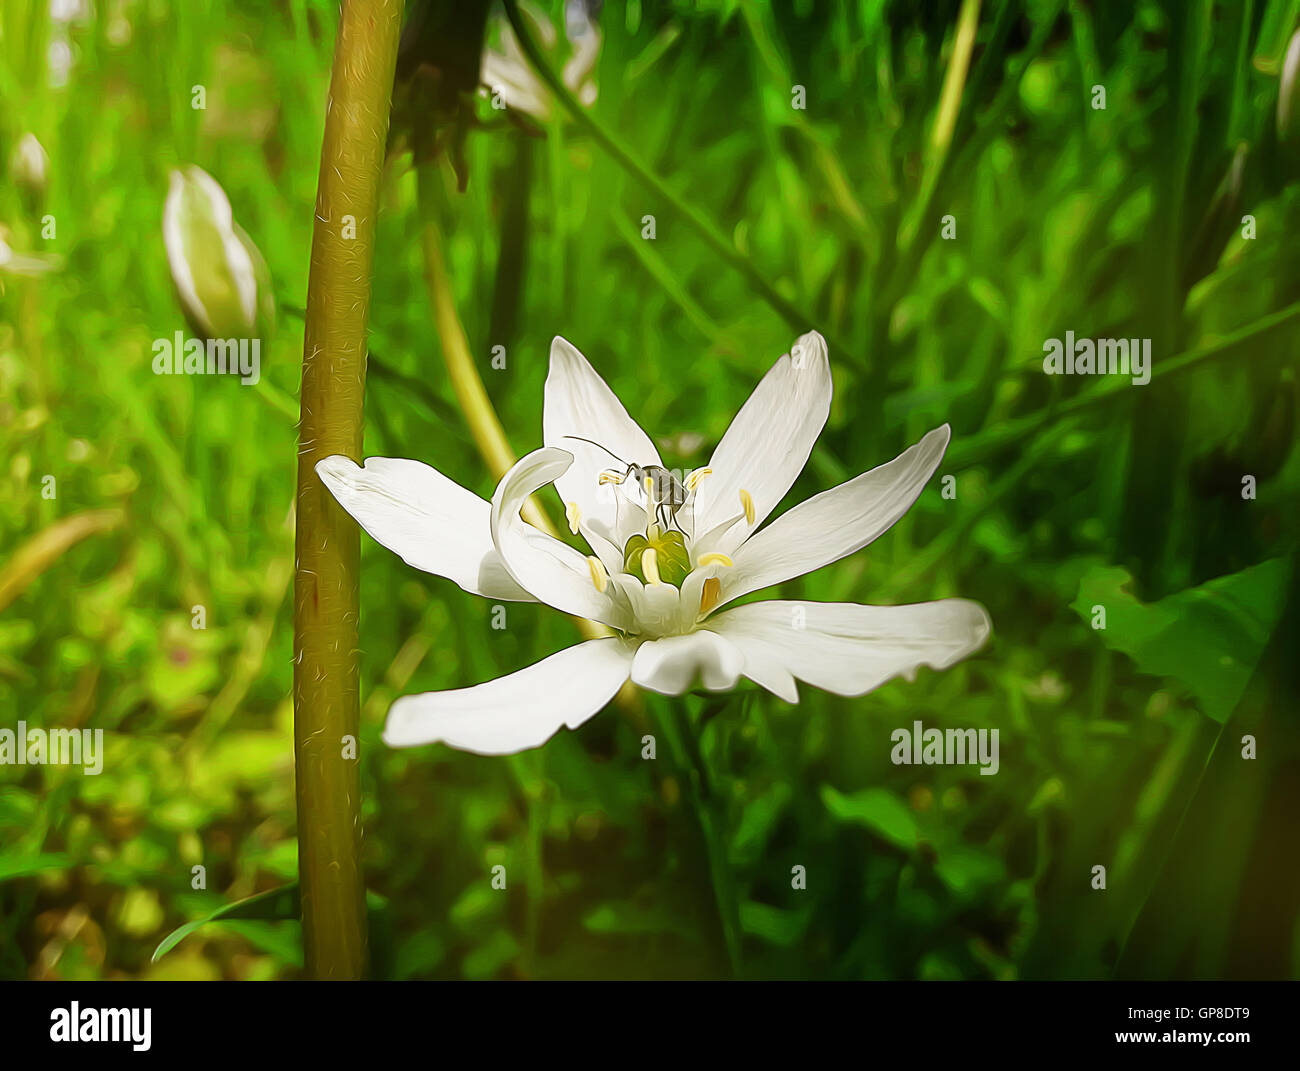 Blanc, fleur sauvage avec un petit insecte au milieu d'un pré vert. Illustration du printemps Banque D'Images